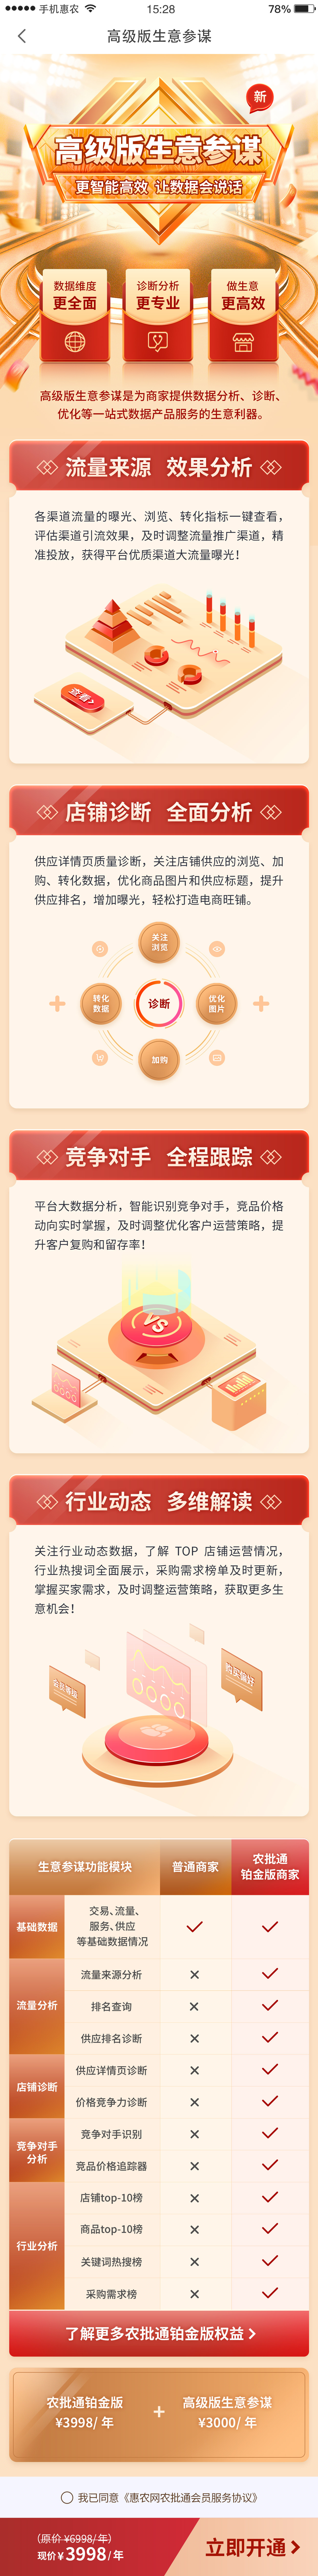 惠农网专题活动页面设计图2